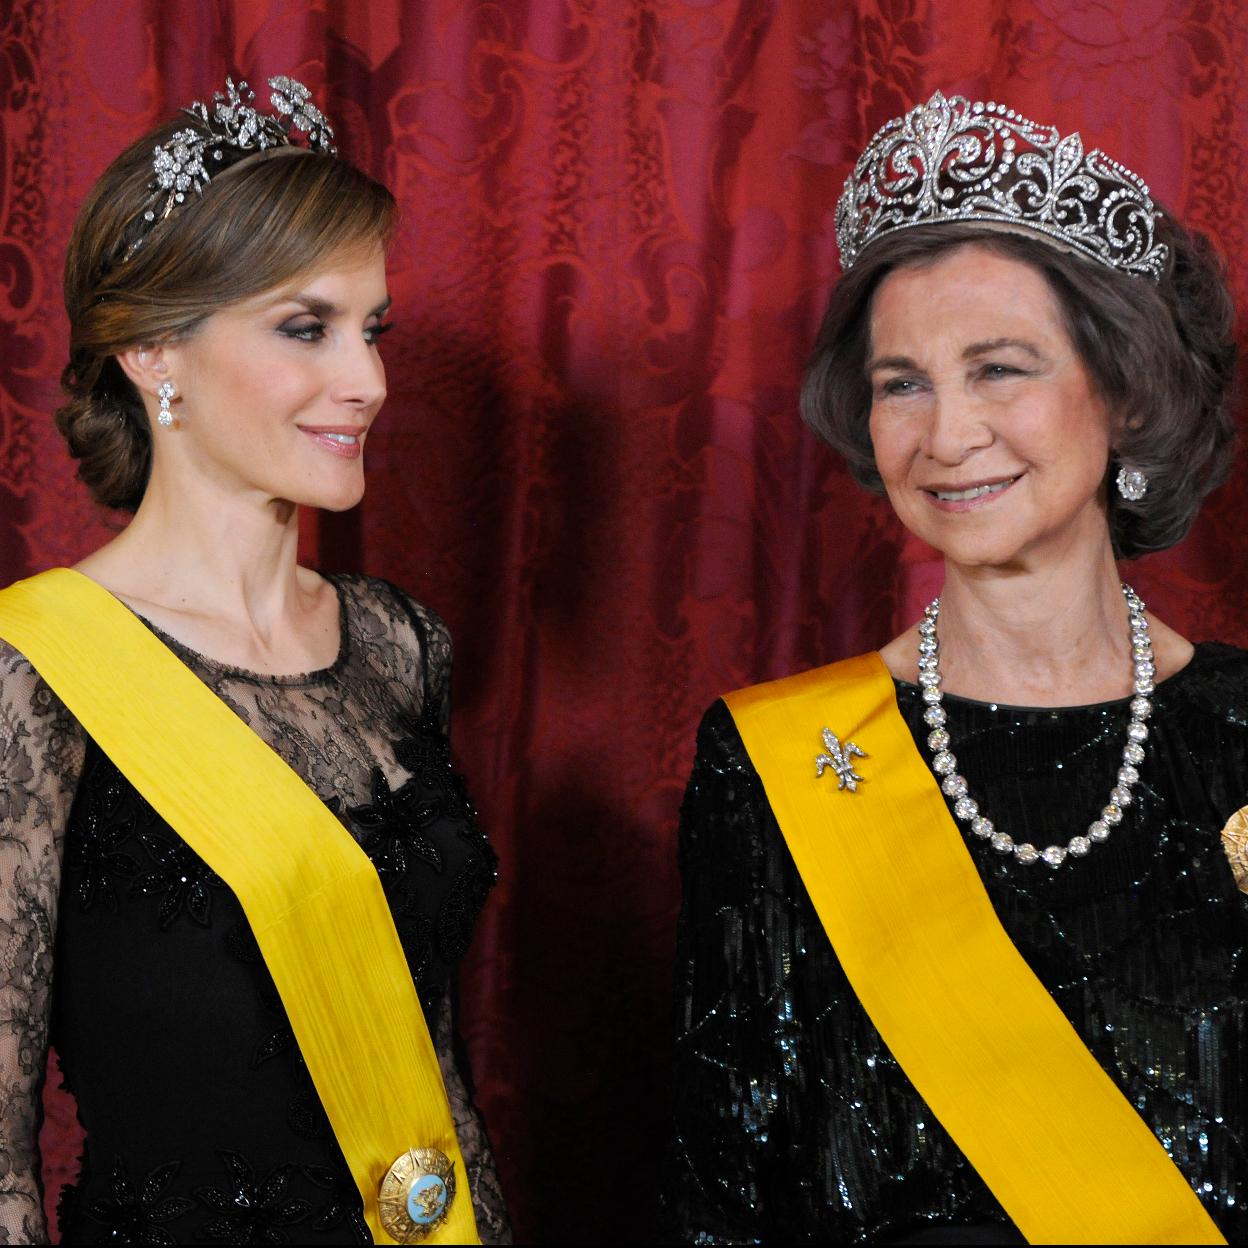 Esta es la historia de las cuatro joyas más espectaculares de la realeza europea: del collar de chatones de la reina Victoria Eugenia a los zafiros de Leuchtenberg de la familia real sueca